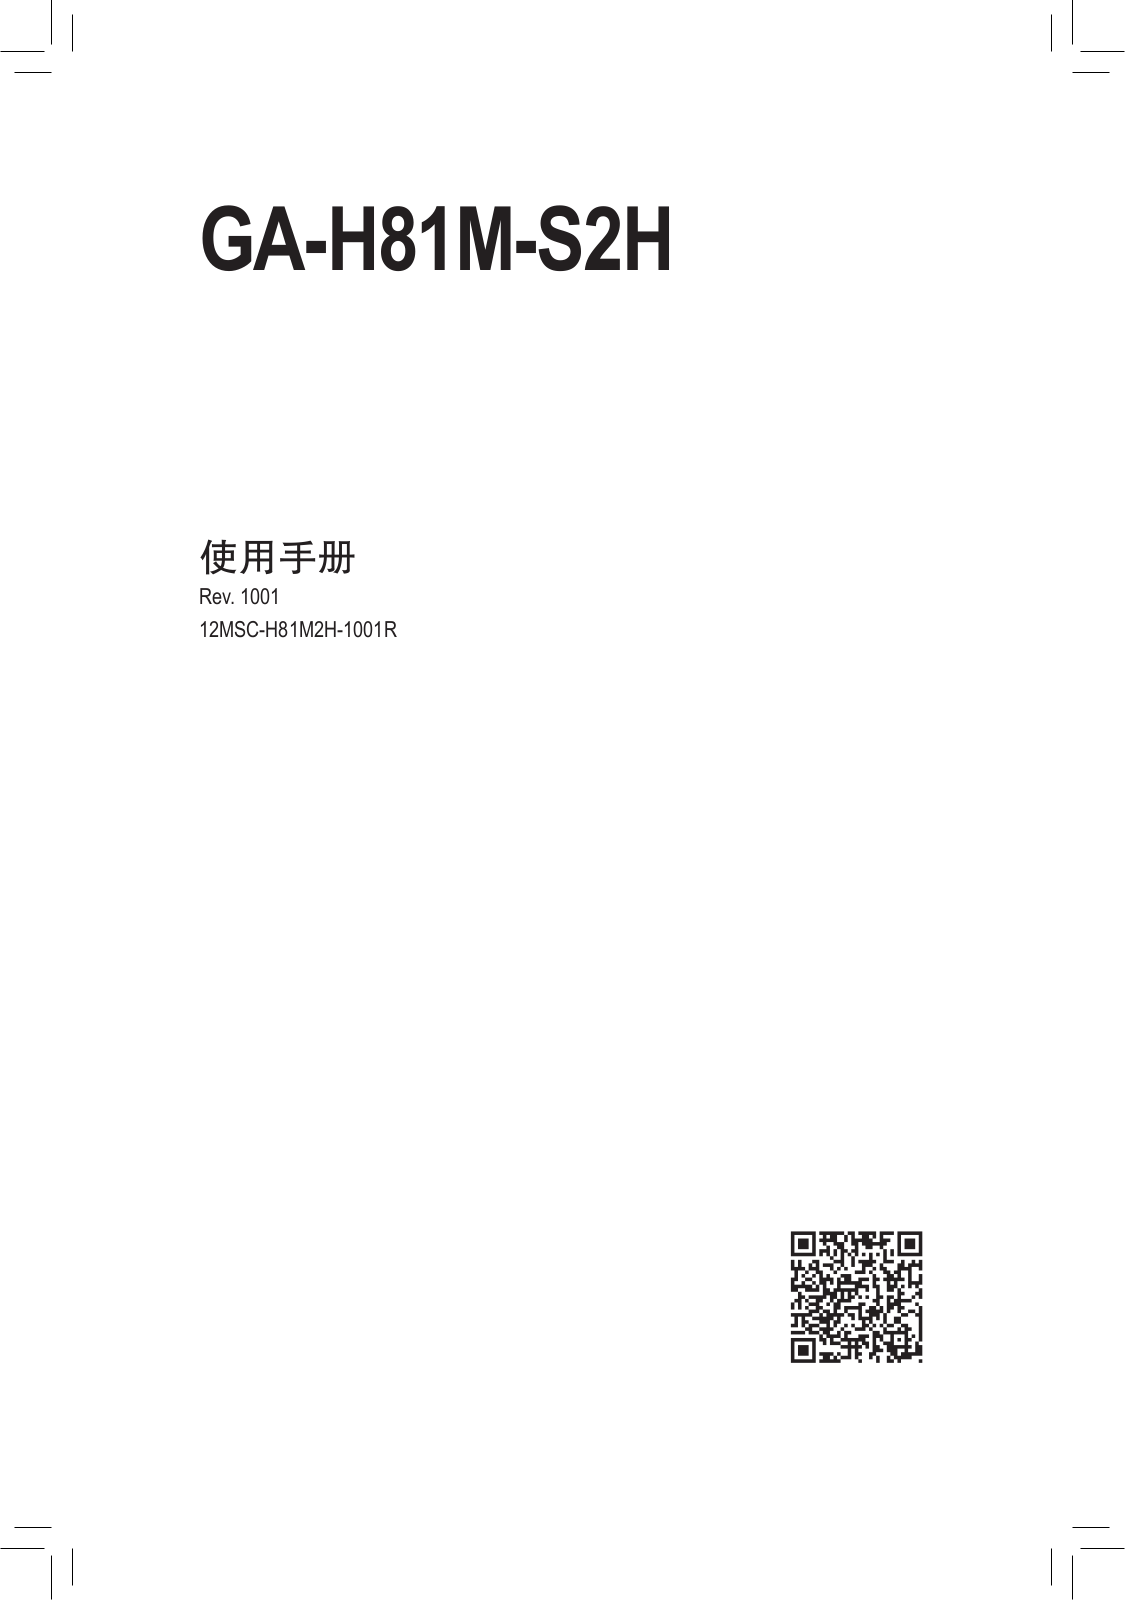 Gigabyte GA-H81M-S2H User Manual